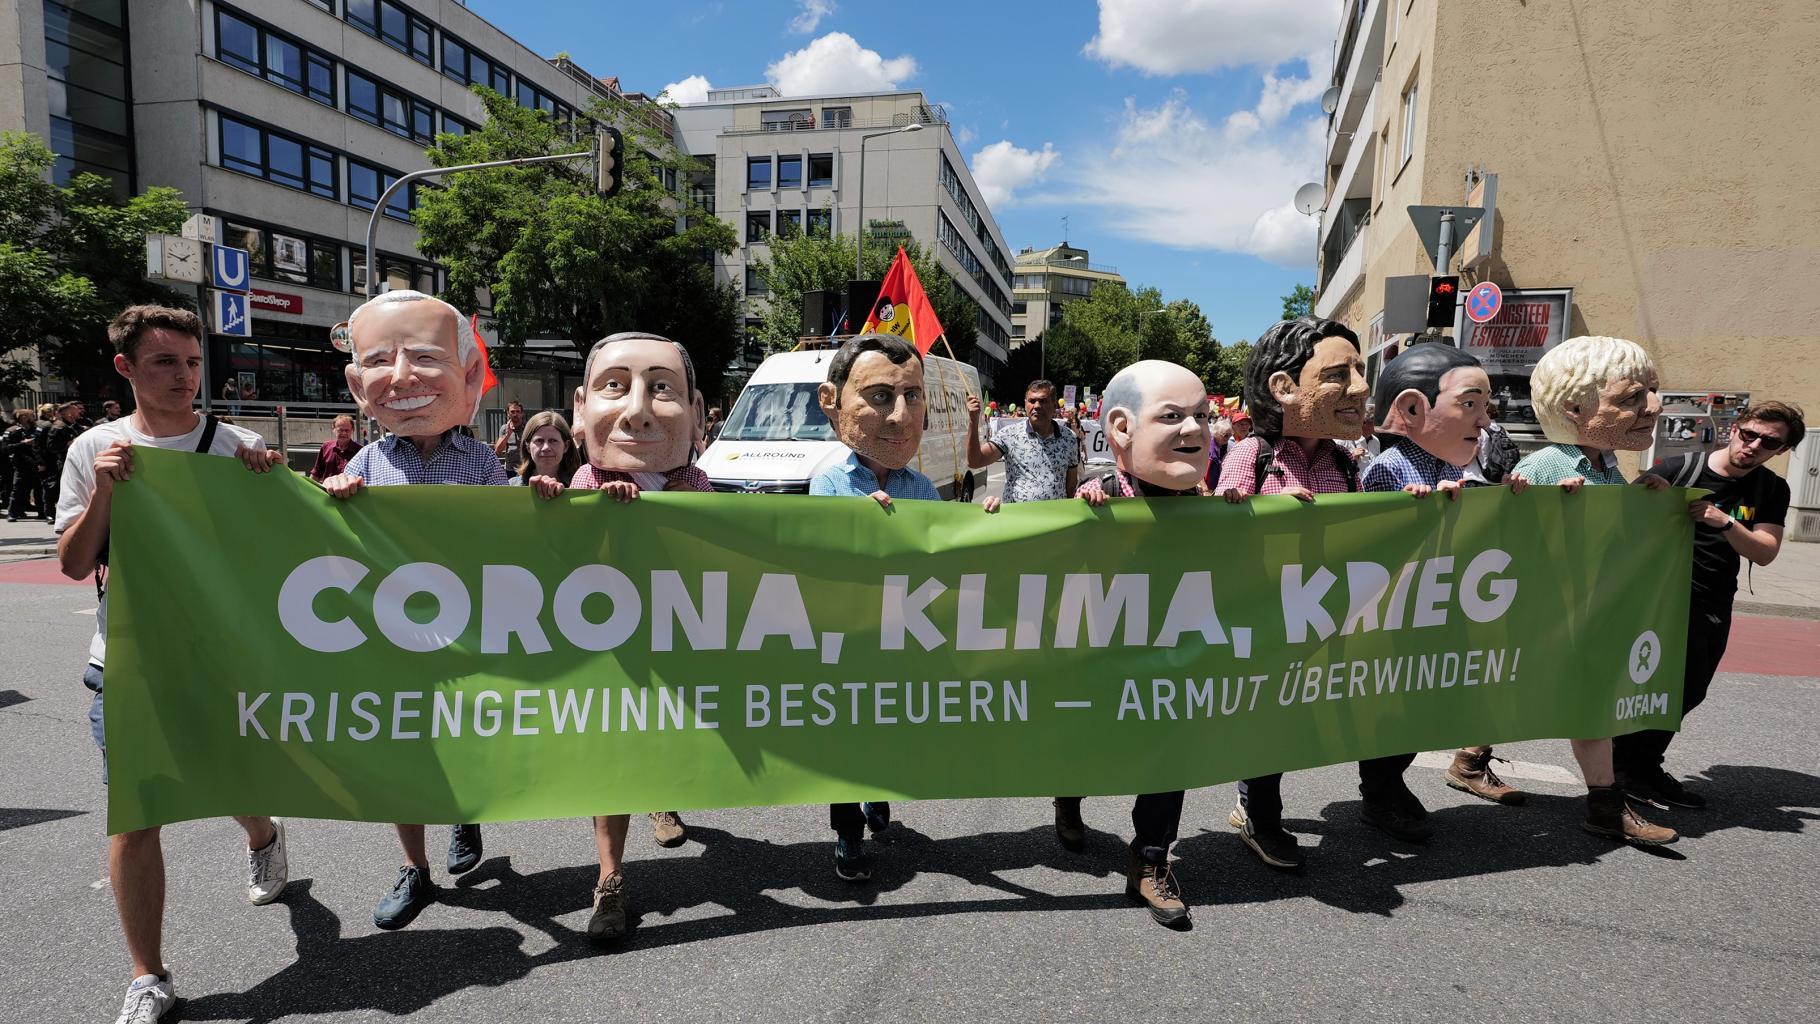 9 Oxfam-Mitarbeiter*innen tragen einen grünen Banner mit der Aufschrift "Corona, Klima, Krieg: Krisengewinne besteuern - Armut überwinden" auf der G7-Demo 2022. 7 von ihnen (mittig) tragen Big-Heads und posieren so als G7-Regierungschefs.